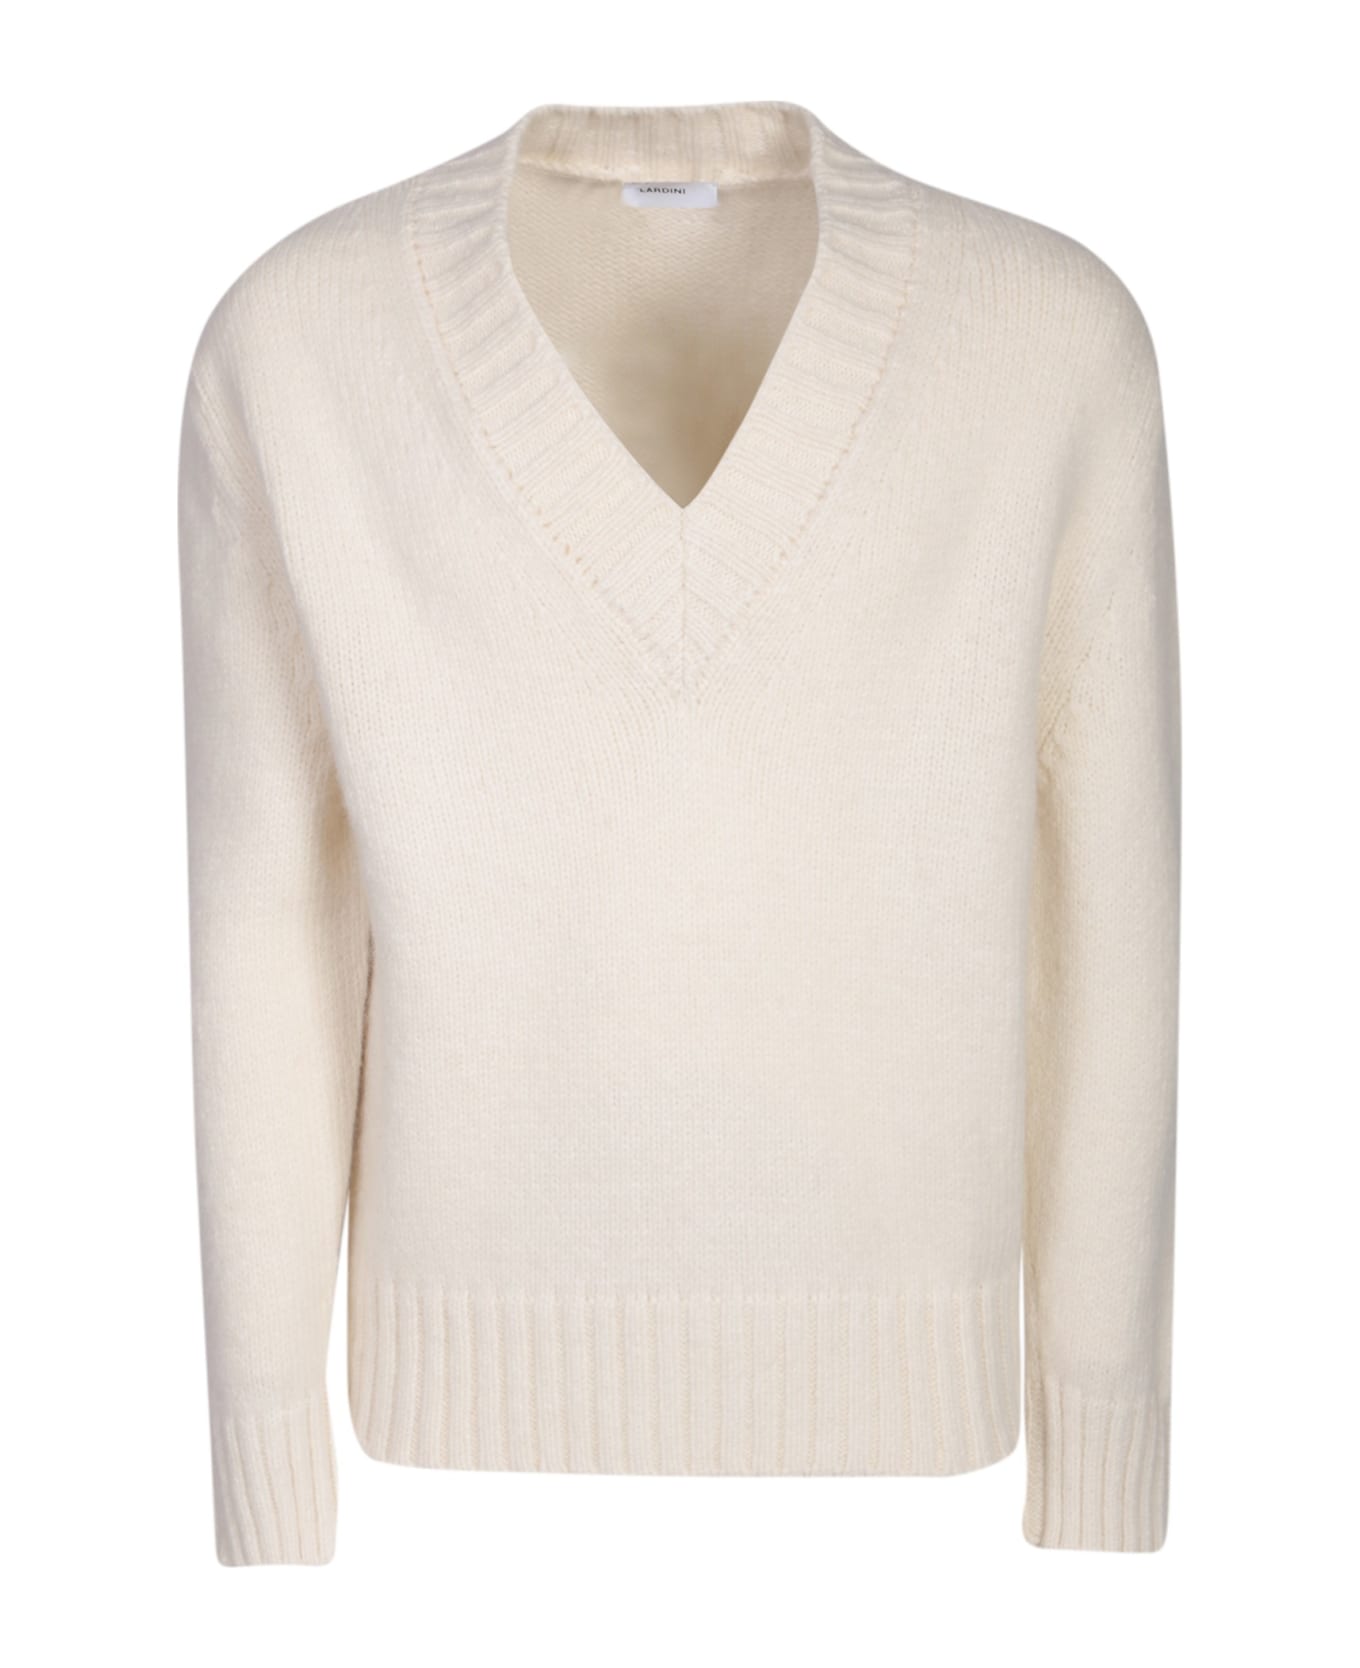 Lardini V-neck White Sweater - White